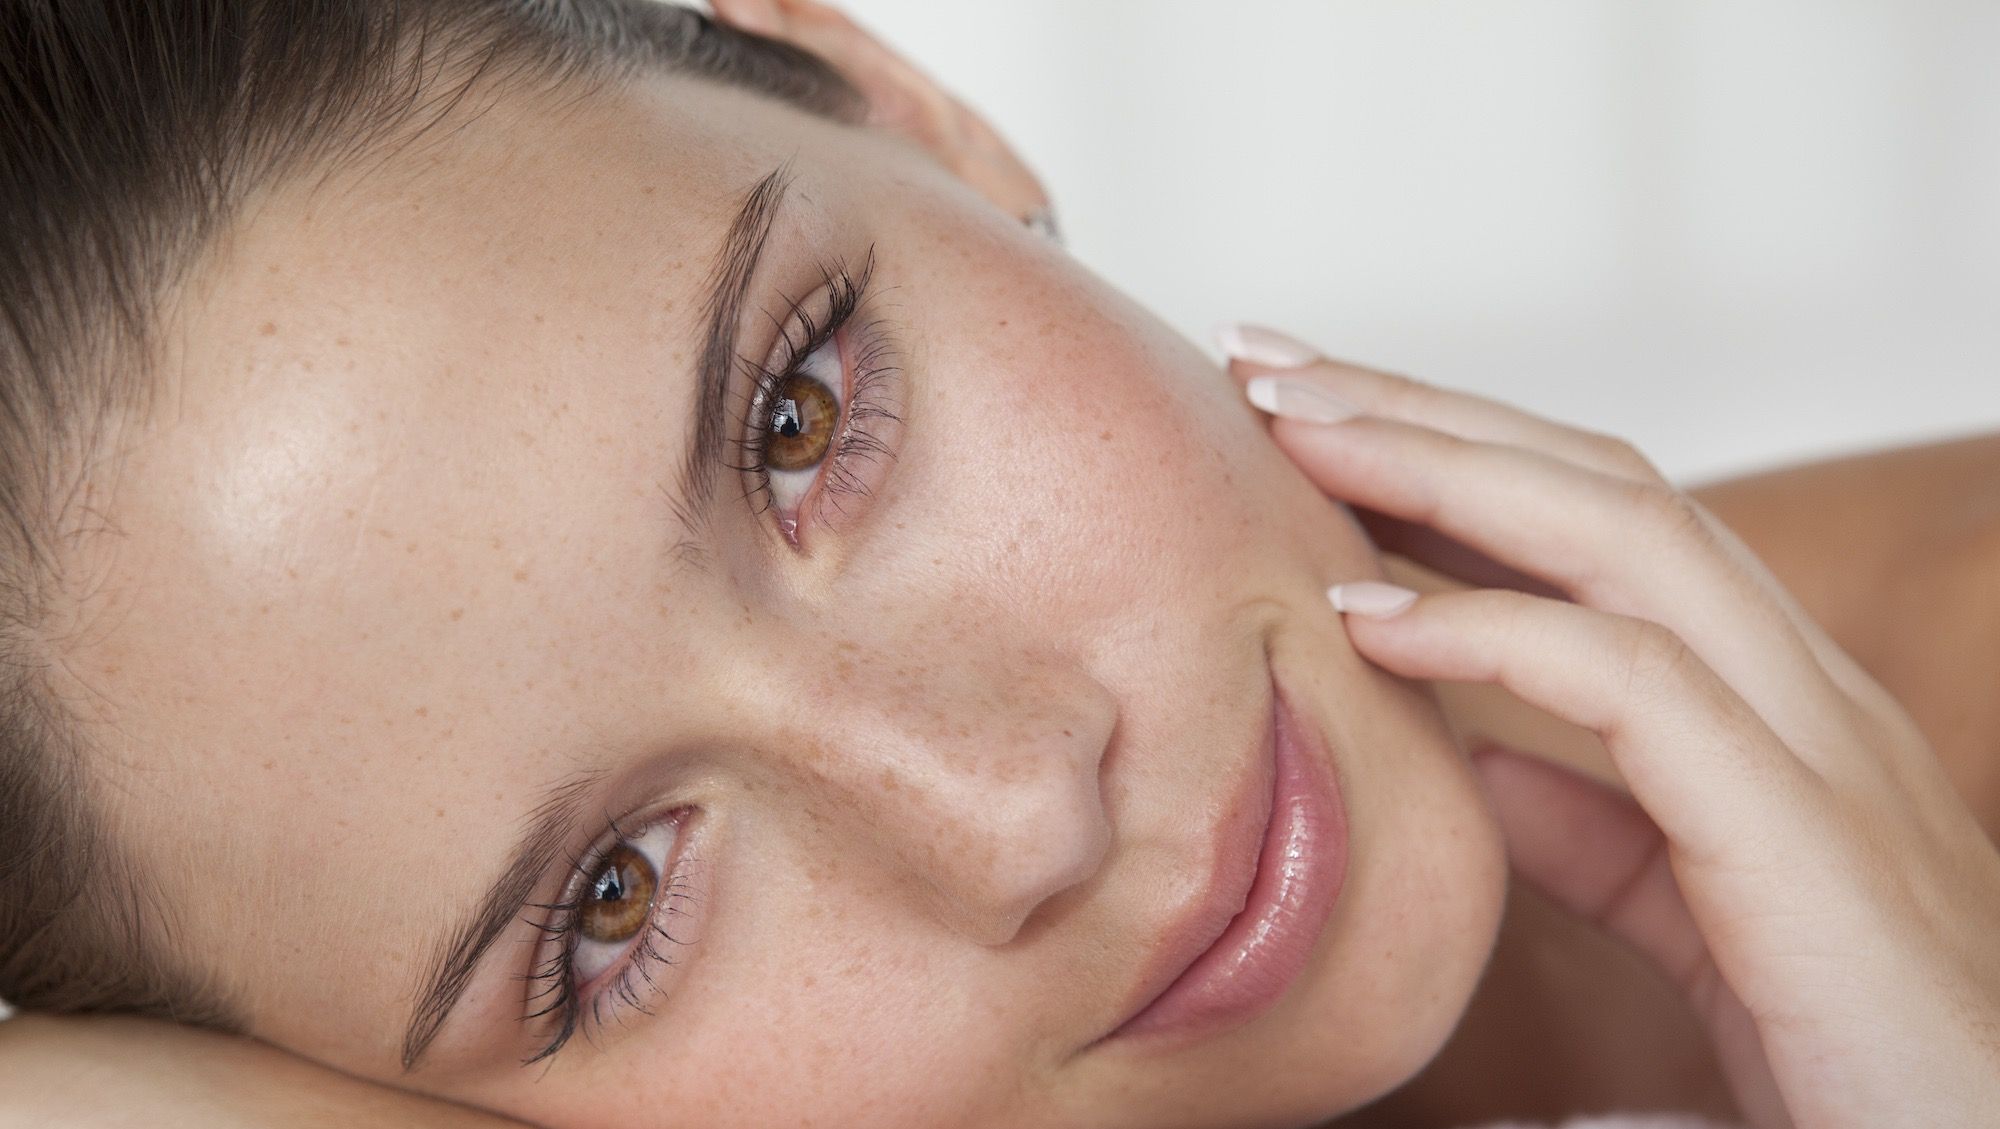 Massaggio al viso: i benefici e i passaggi per realizzarlo - The Wom Beauty